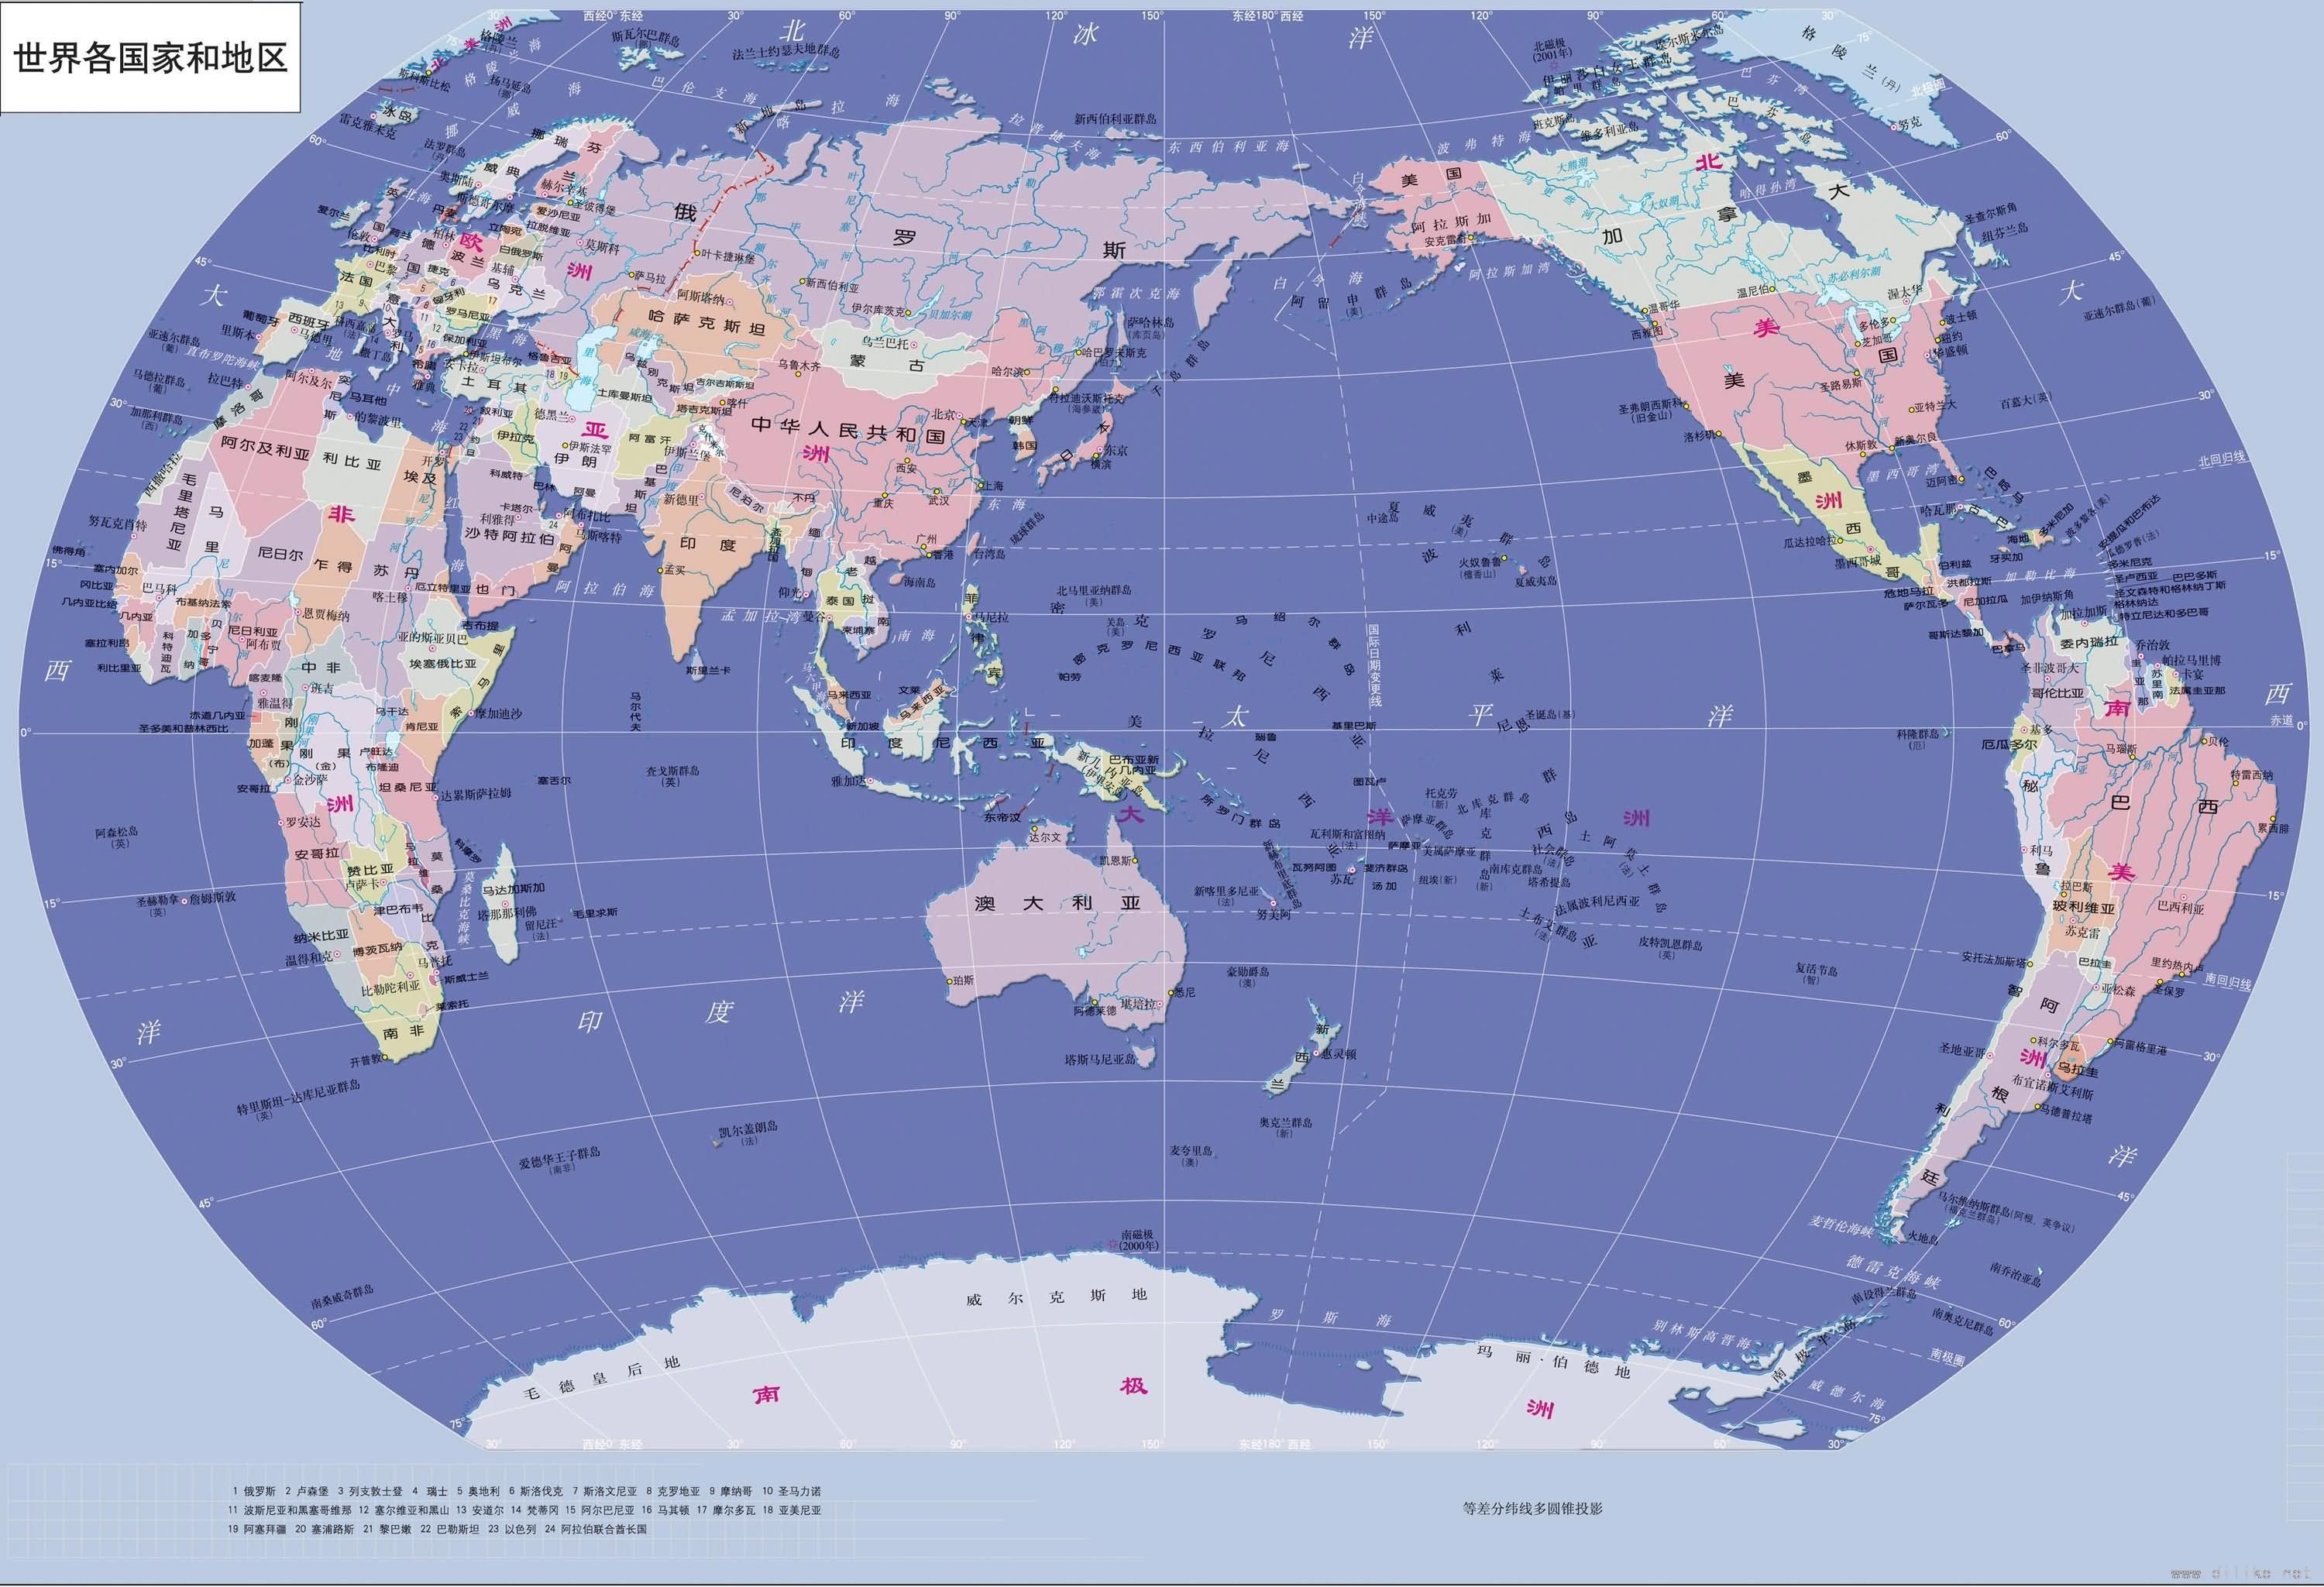 世界地图_高清_世界地图中文版 - 教程书籍 - ARP绿色软件联盟